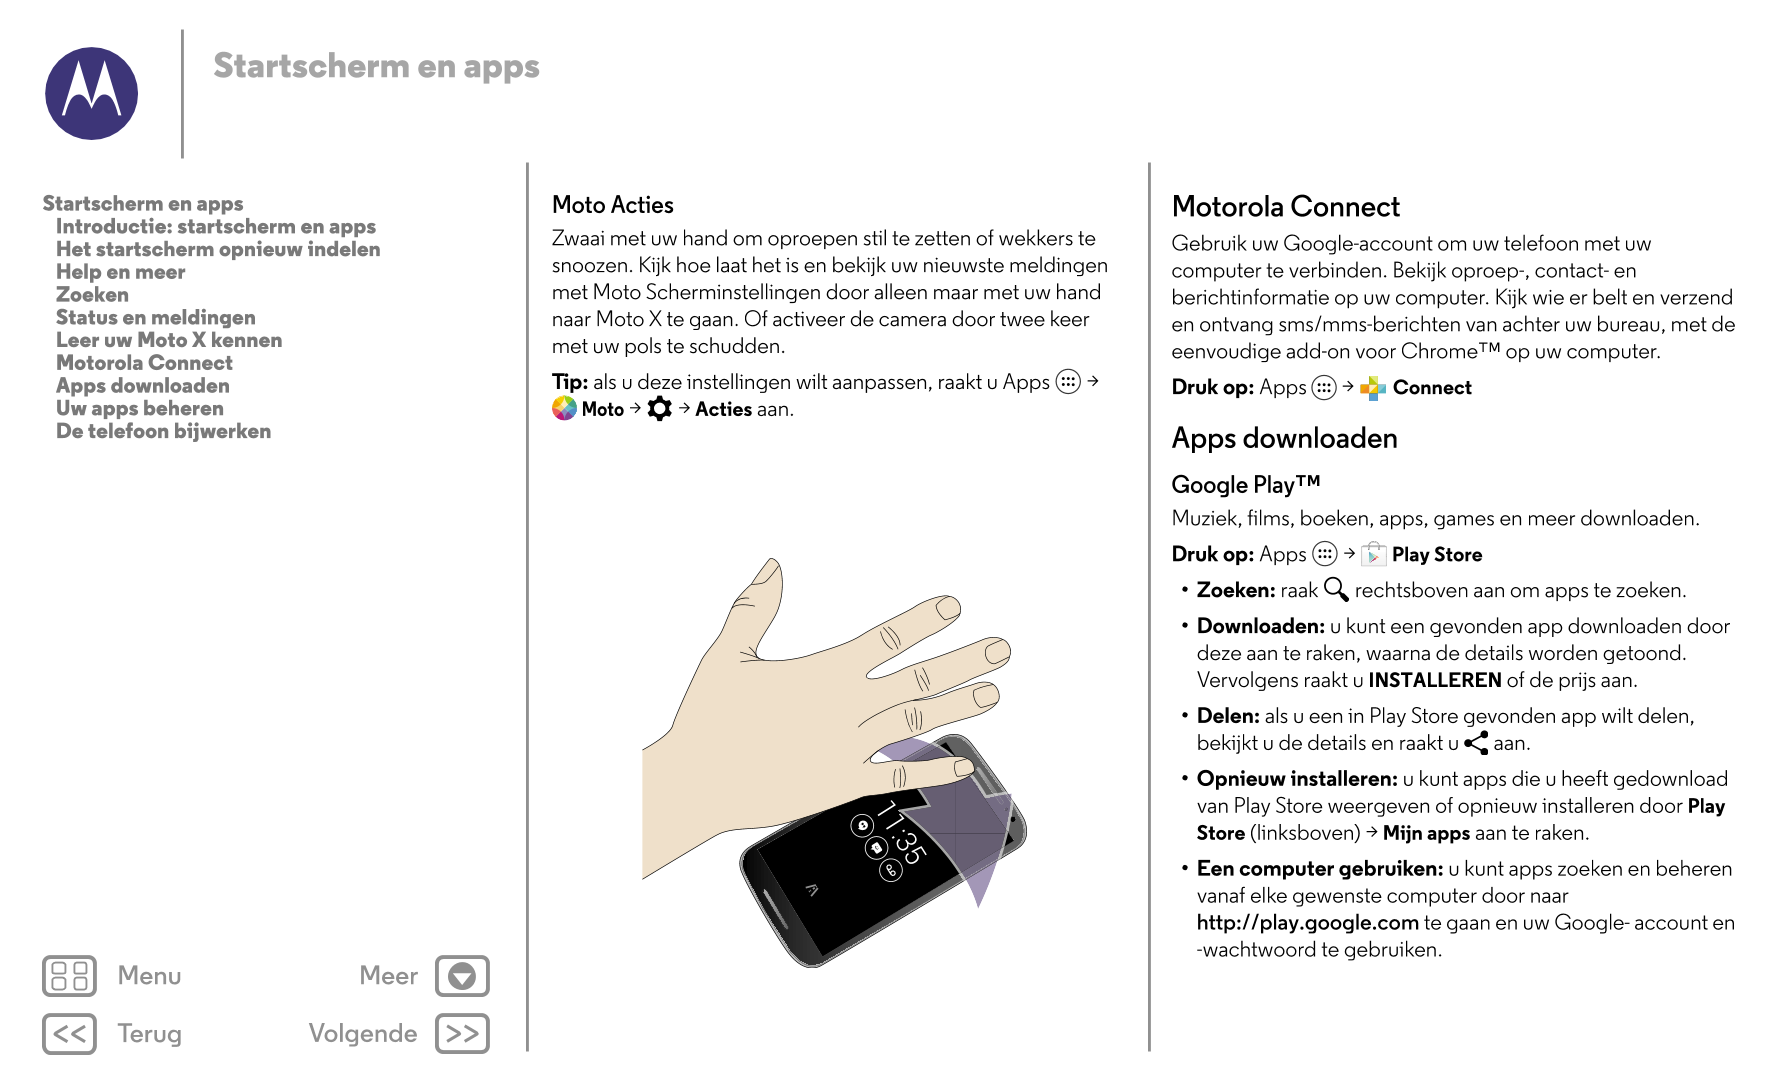 Startscherm en apps
Startscherm en apps Moto Acties Motorola Connect
   Introductie: startscherm en apps
   Het startscherm opni